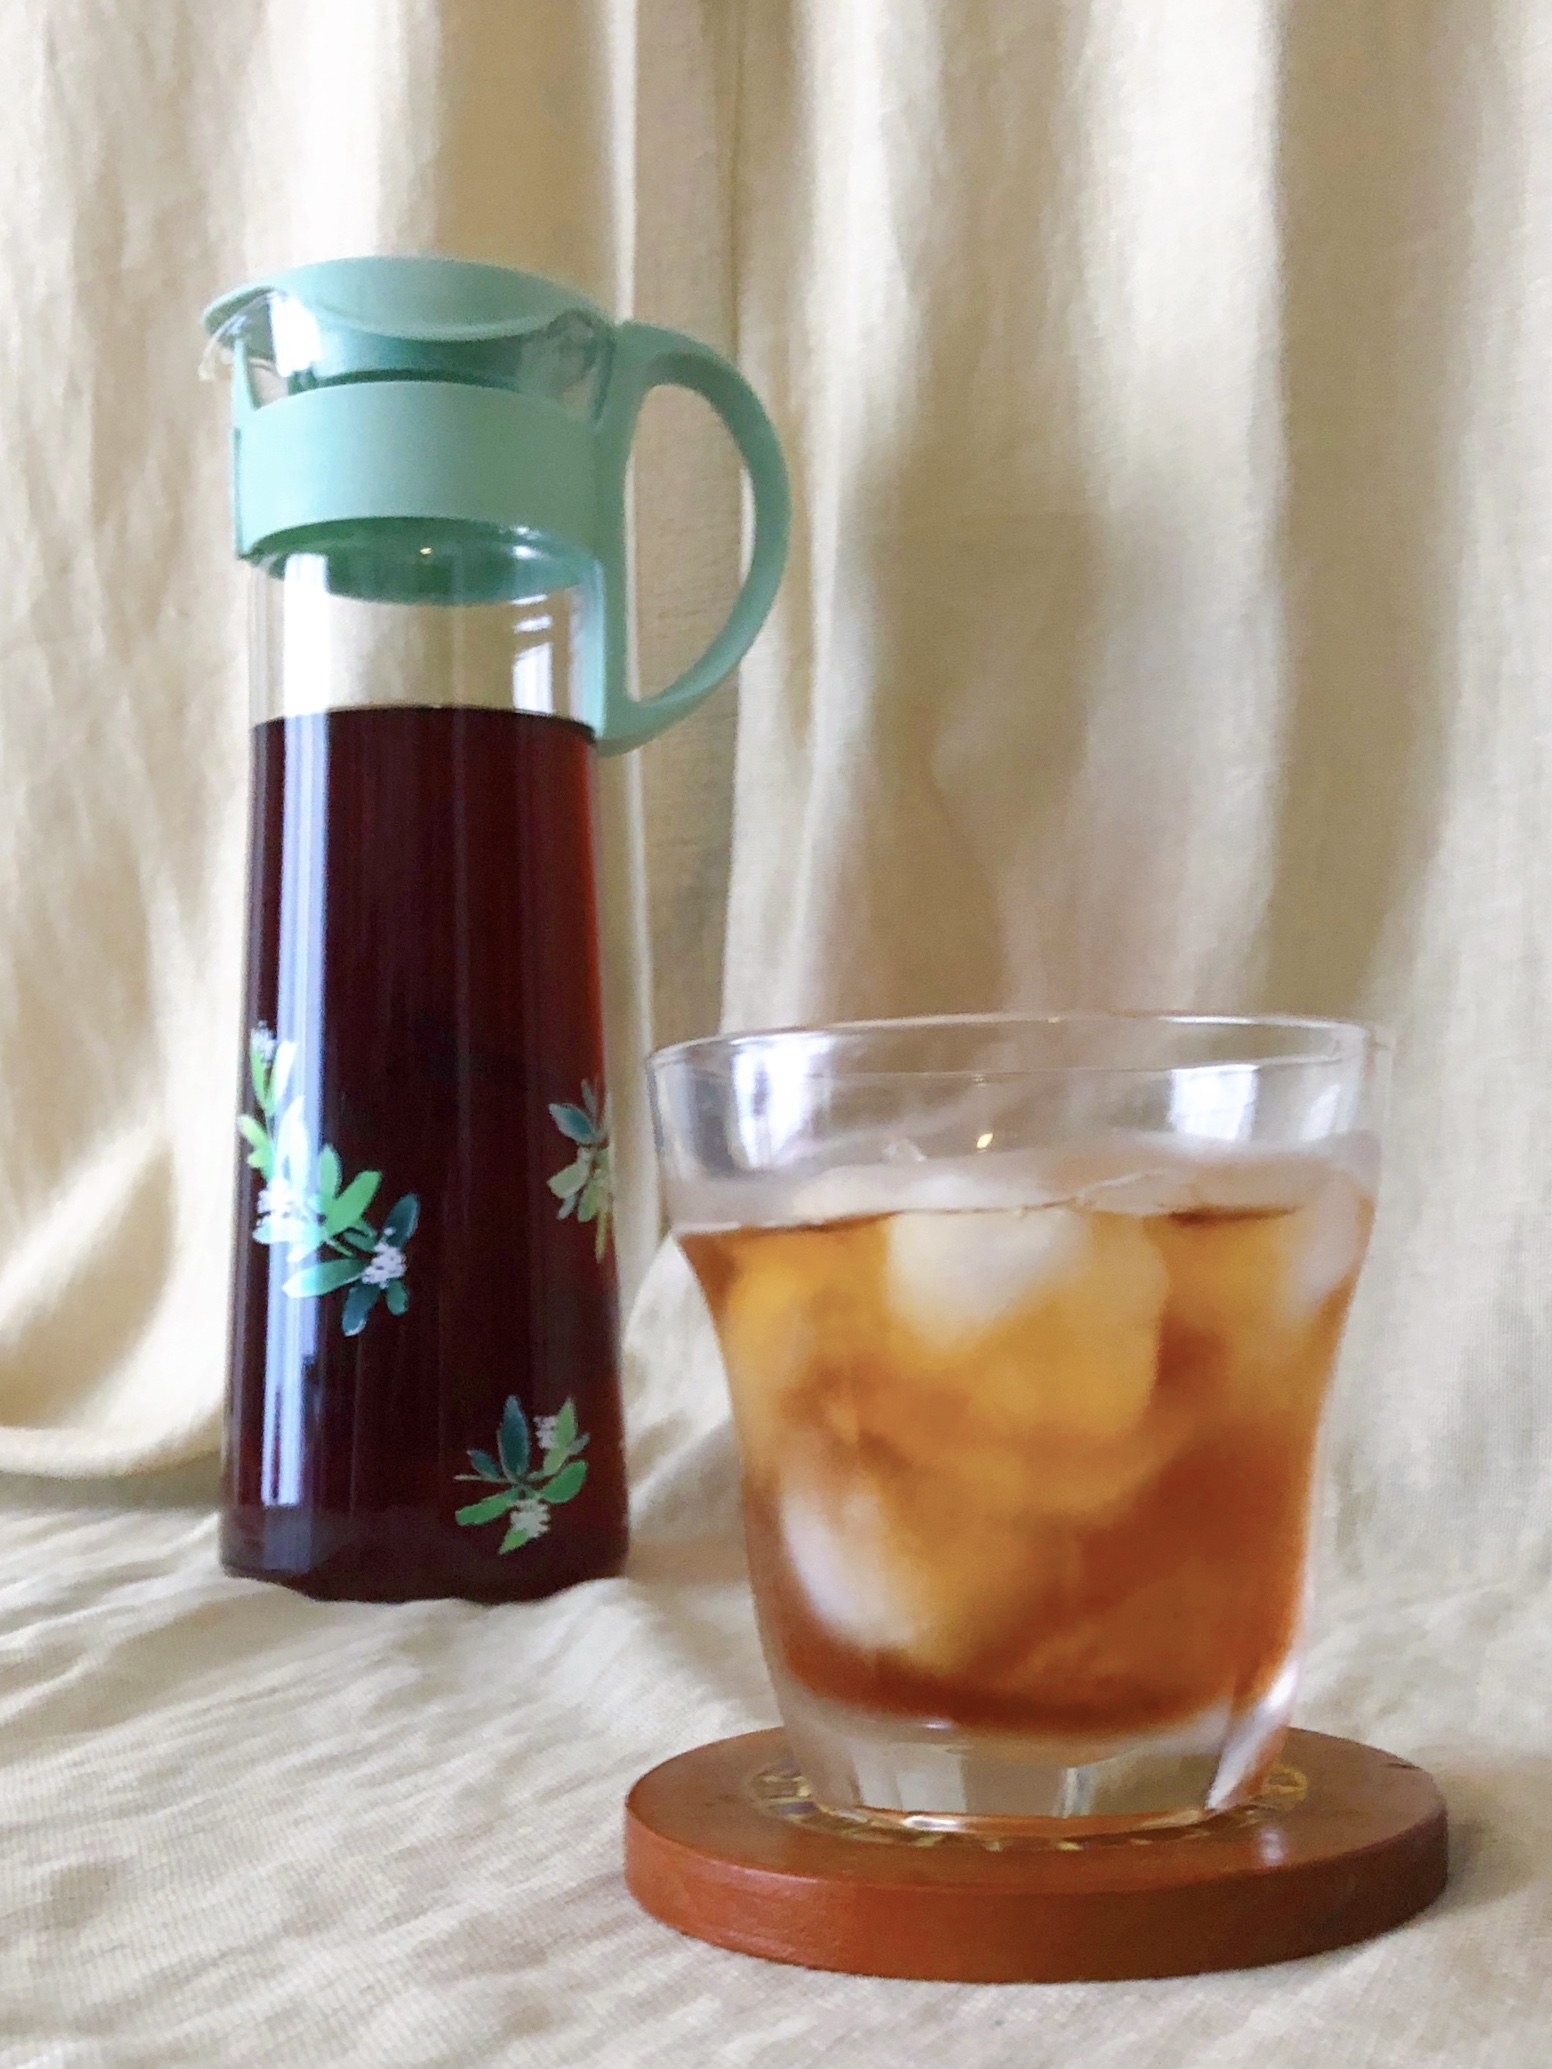 Afternoon Tea LIVING （アフターヌーンティー・リビング）のキッチングッズ「バーベナストレーナー付きガラスボトル」耐熱ガラスだから便利